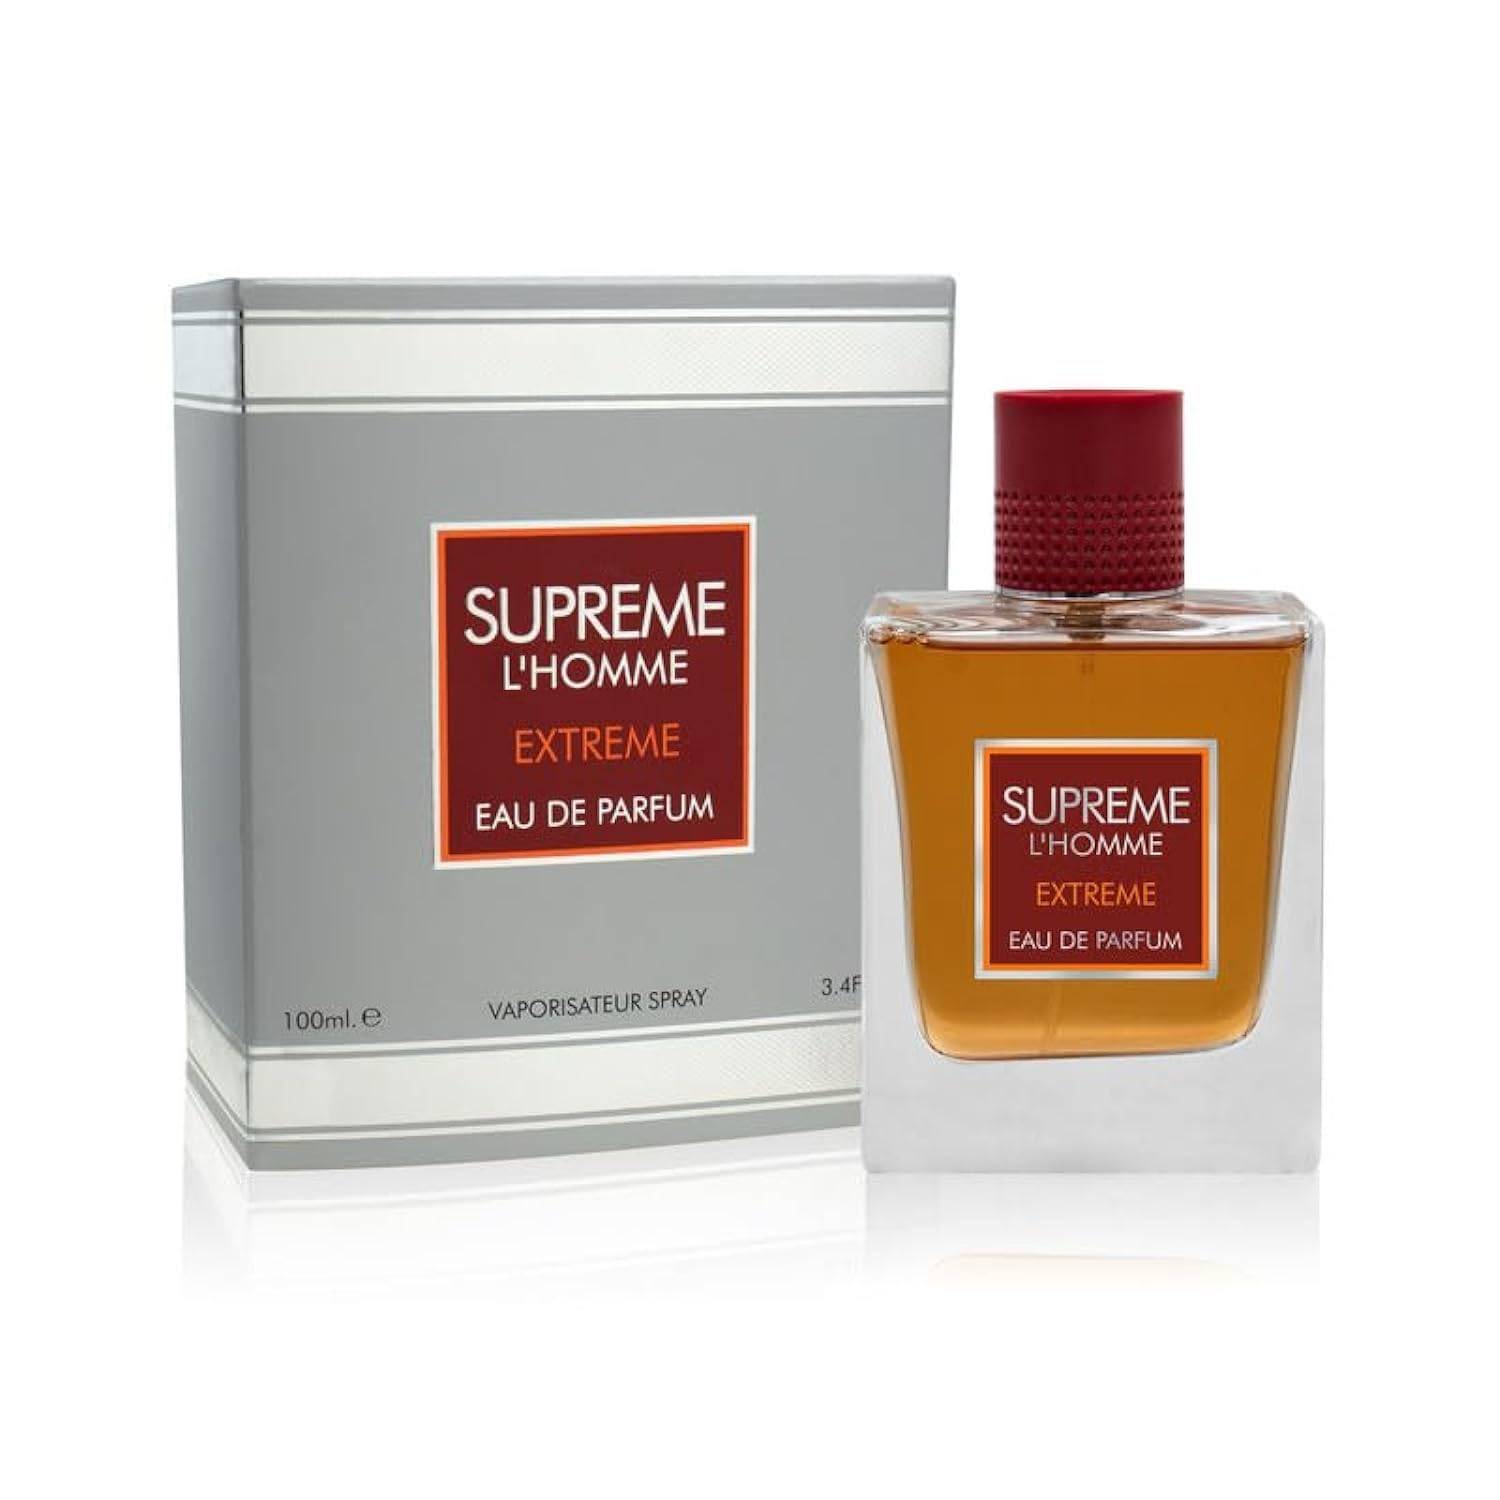 Guerlain L'homme Ideal Extreme Eau de Parfum: Buy Guerlain L'homme